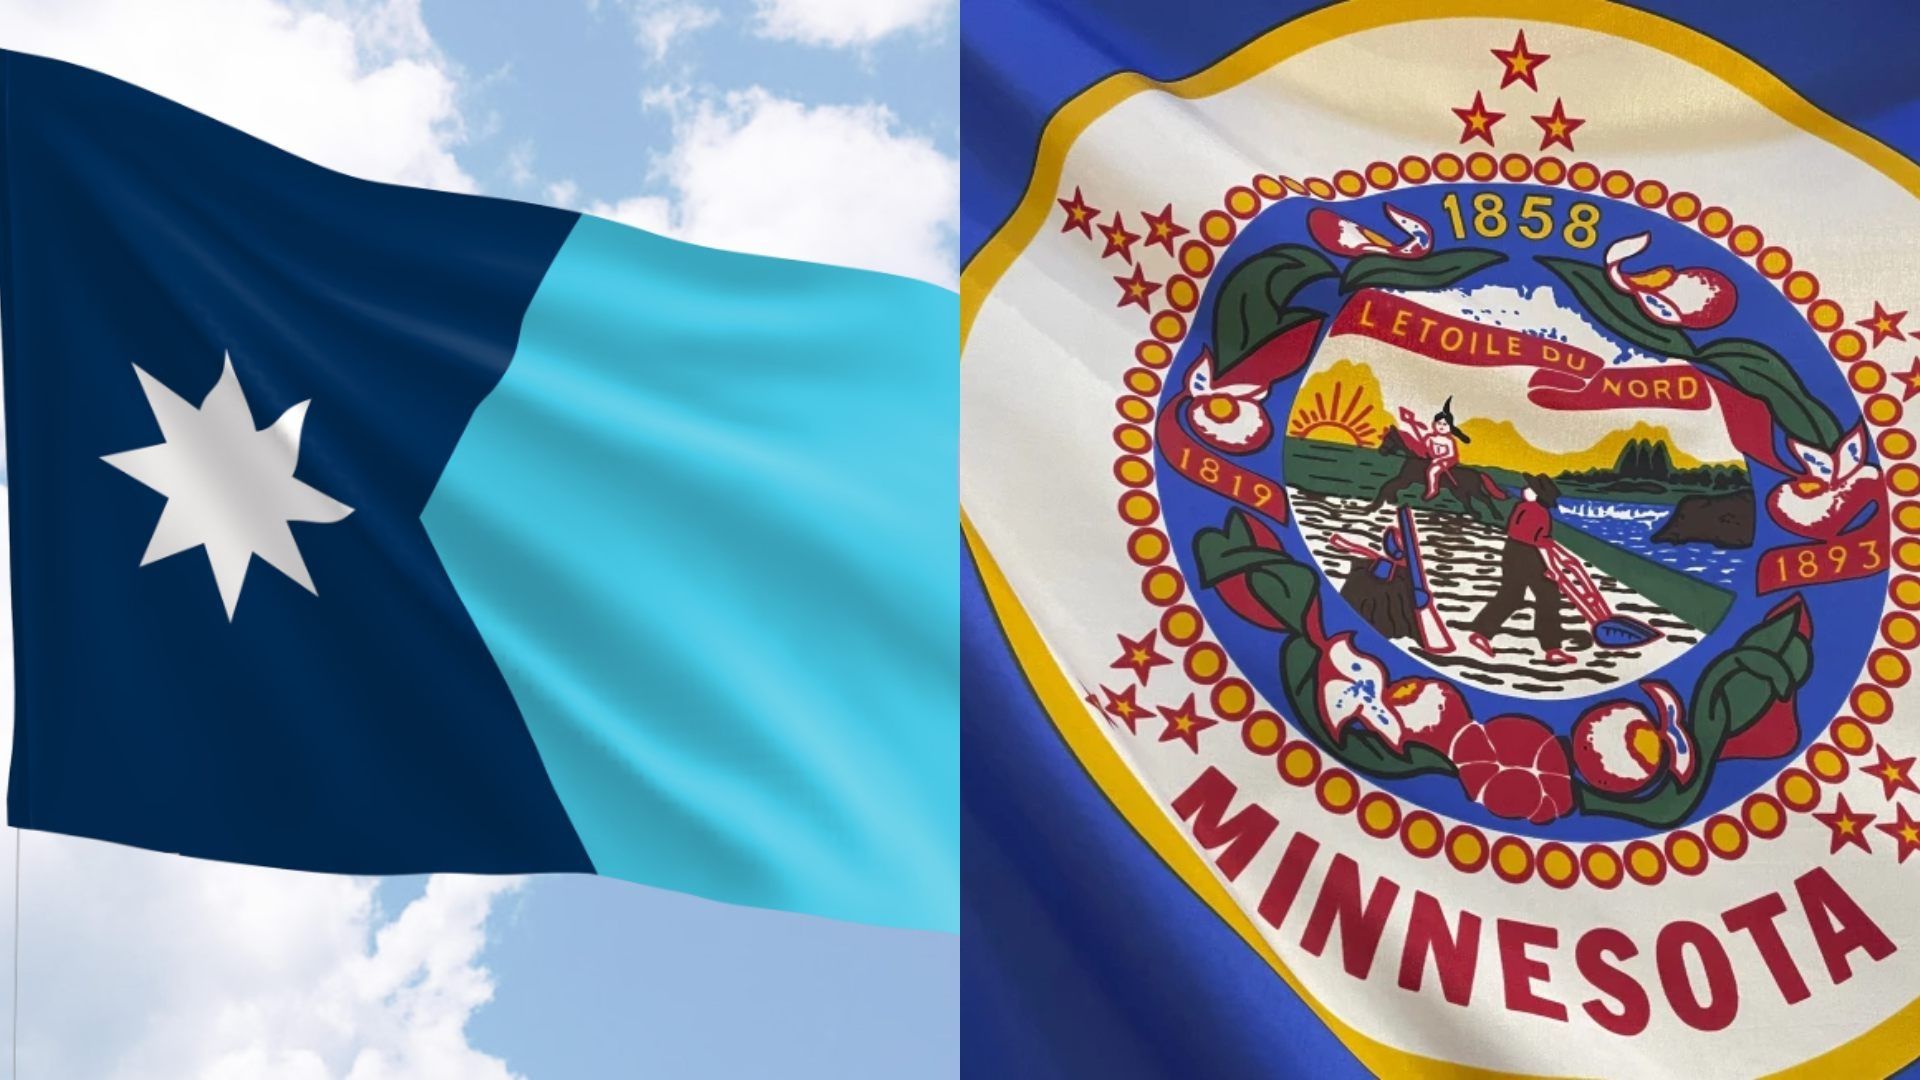 La nueva bandera estatal de Minnesota y el diseño antiguo que ha sido criticado